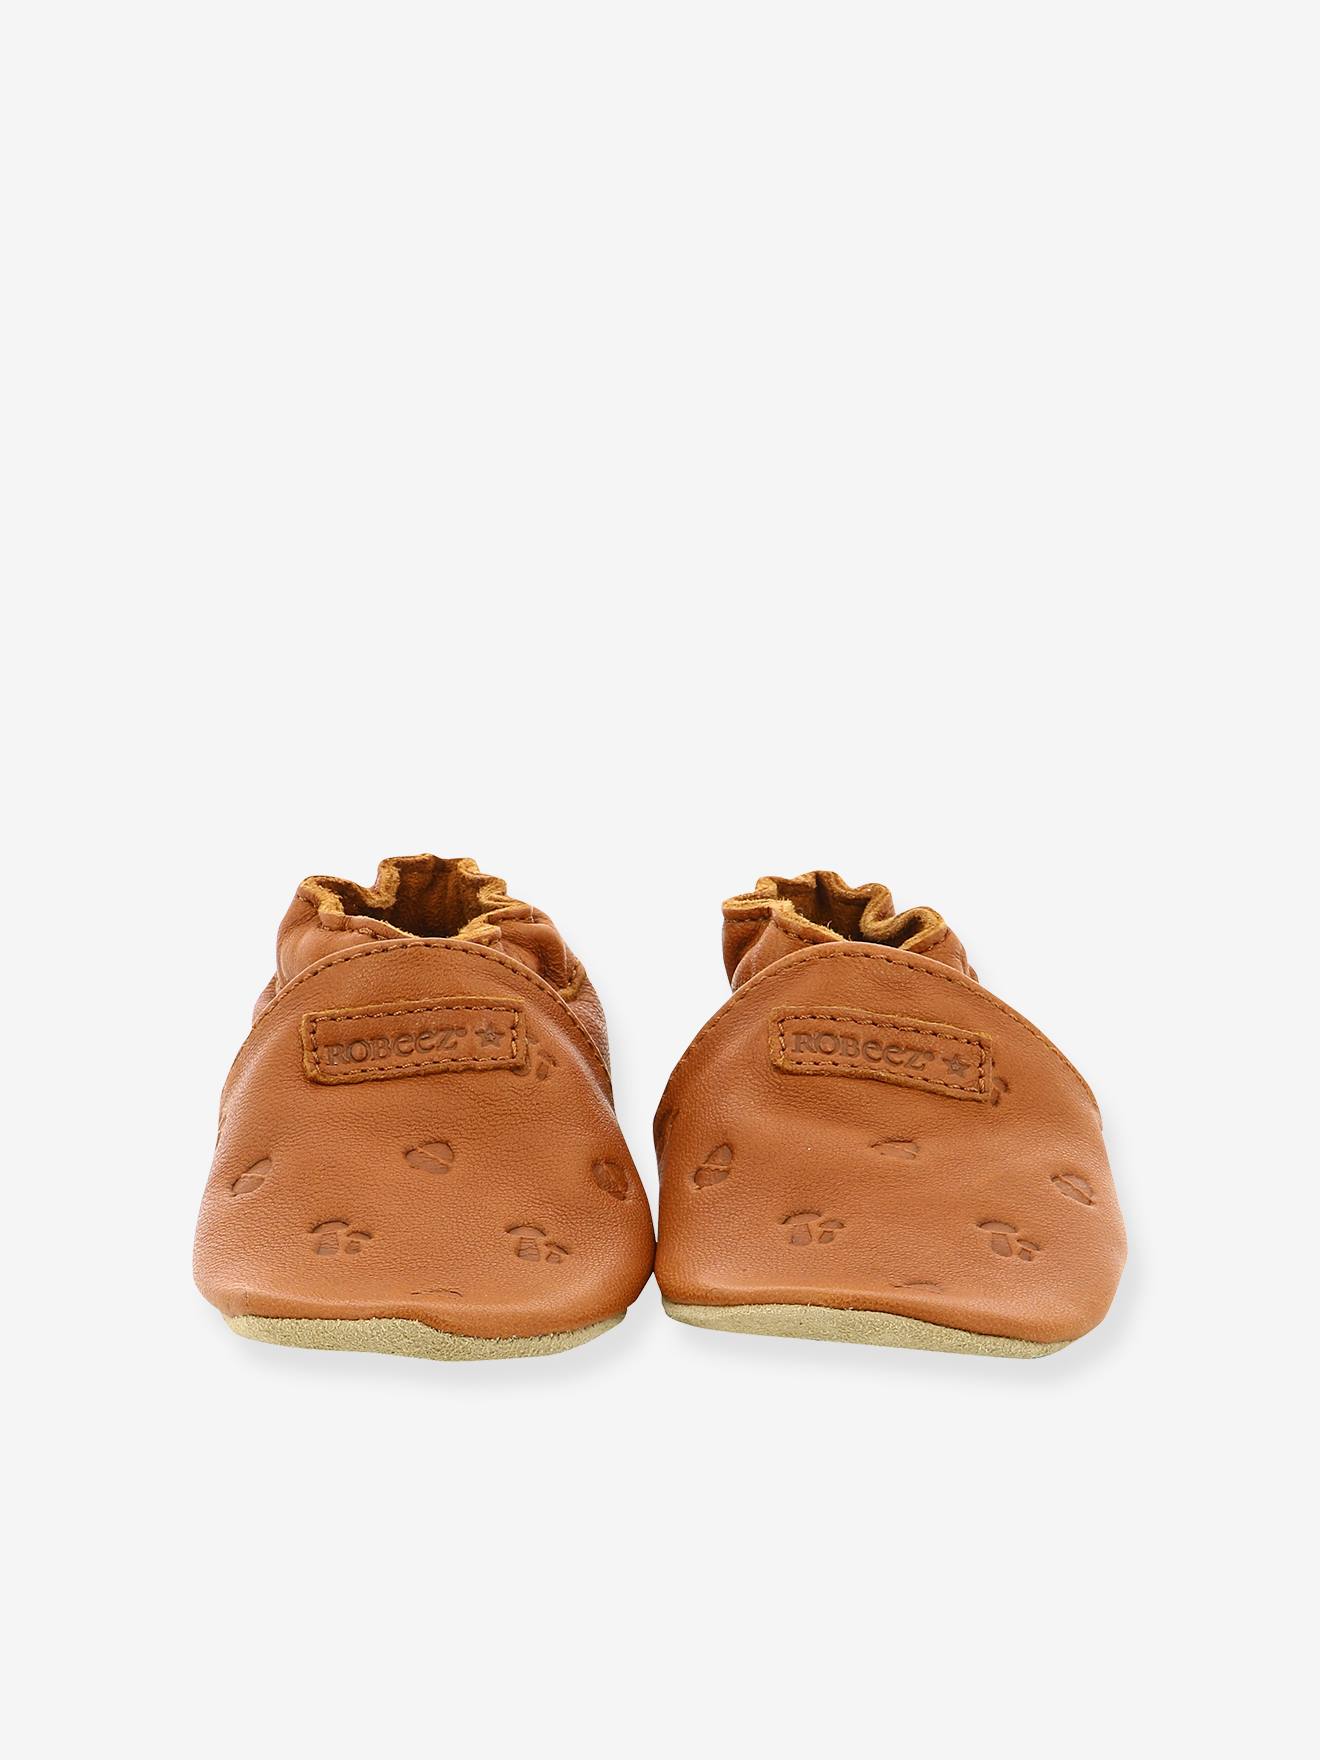 Chaussons cuir souple bébé Grooar ROBEEZ© - camel